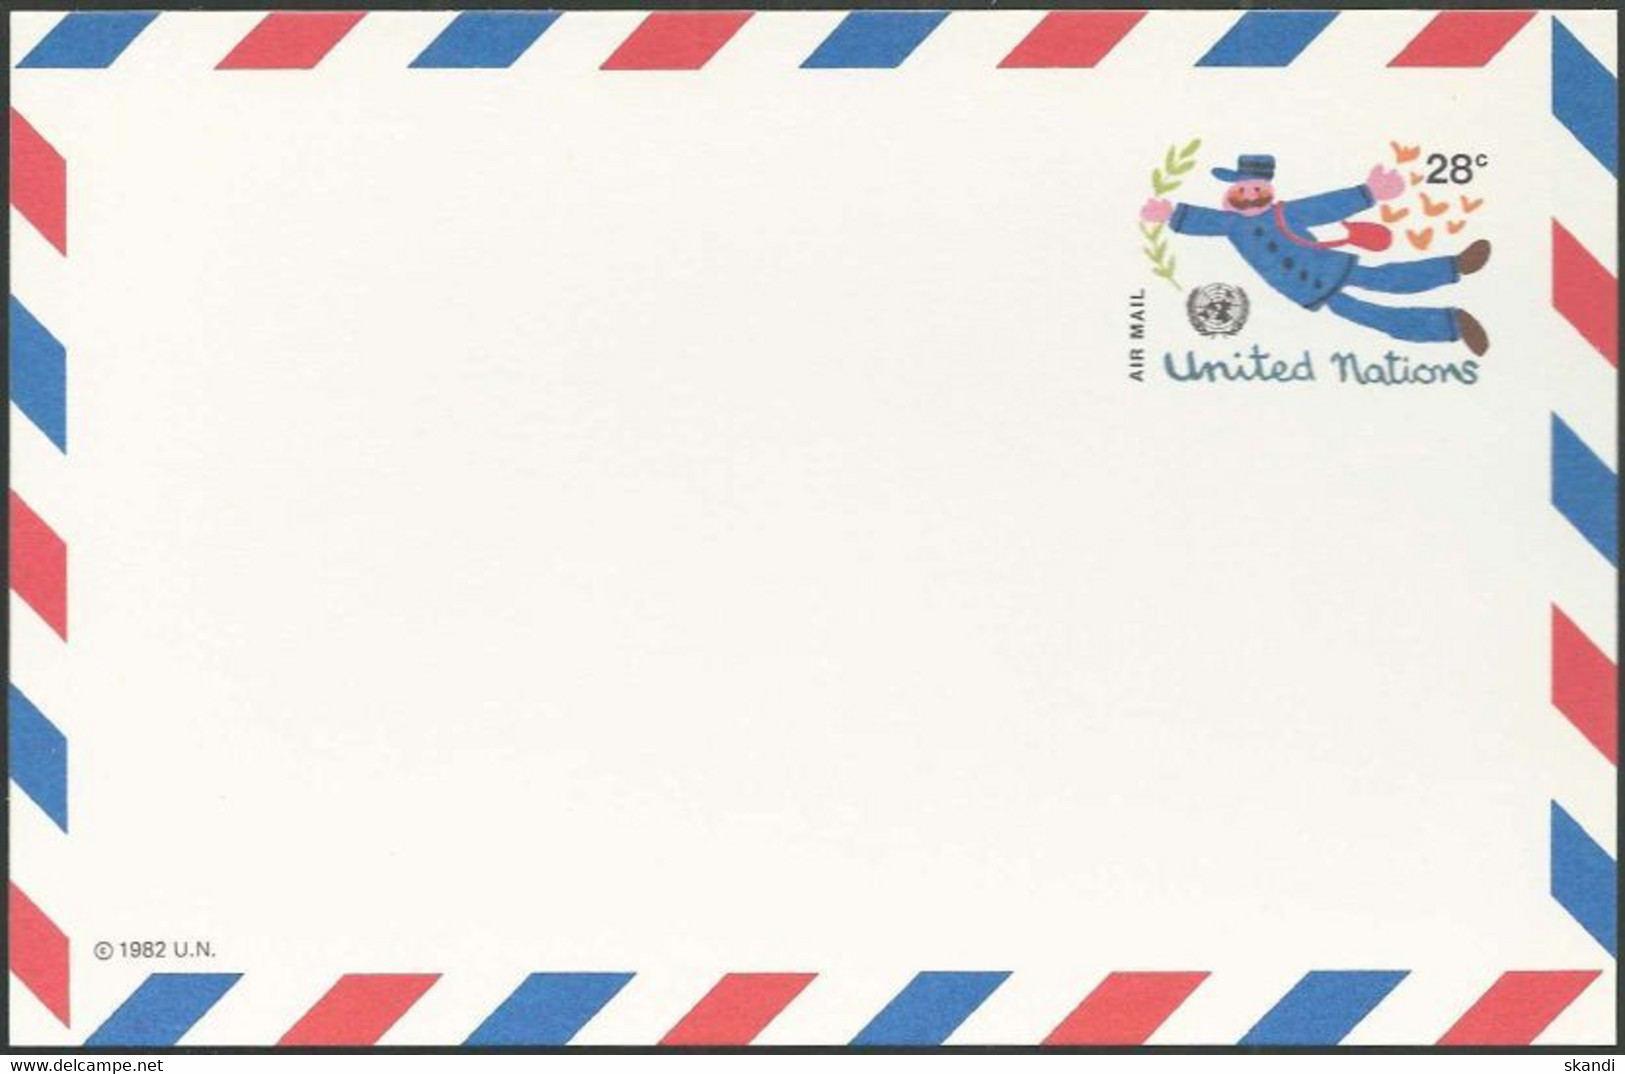 UNO NEW YORK 1982 Mi-Nr. LP 12 Ganzsache Luftpostkarte Ungebraucht - Luchtpost